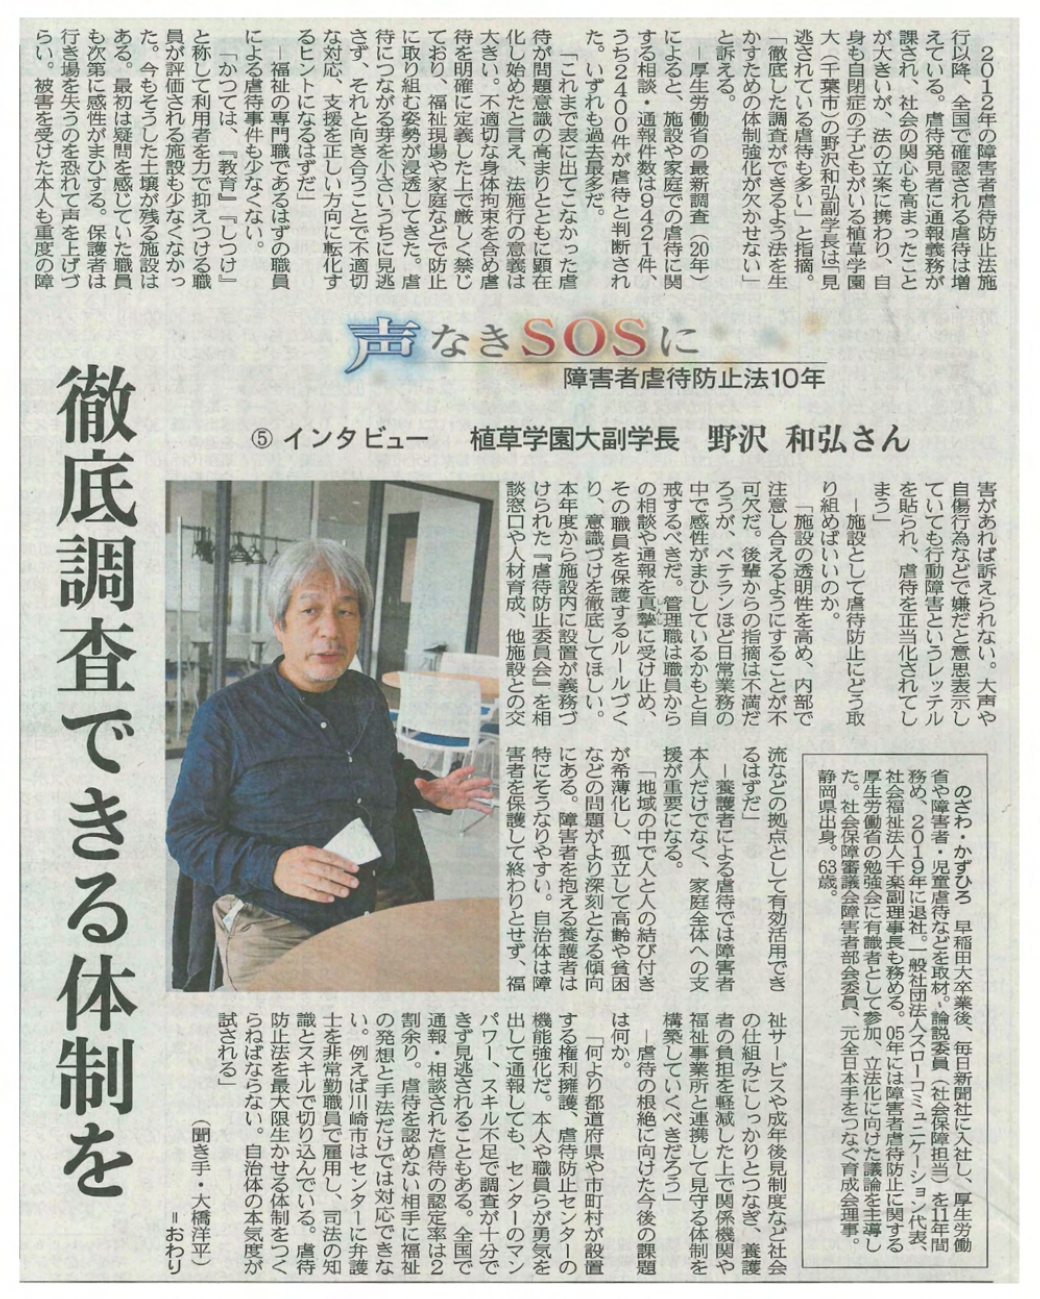 植草学園大学 副学長 野澤和弘副学長が山陽新聞に掲載されました